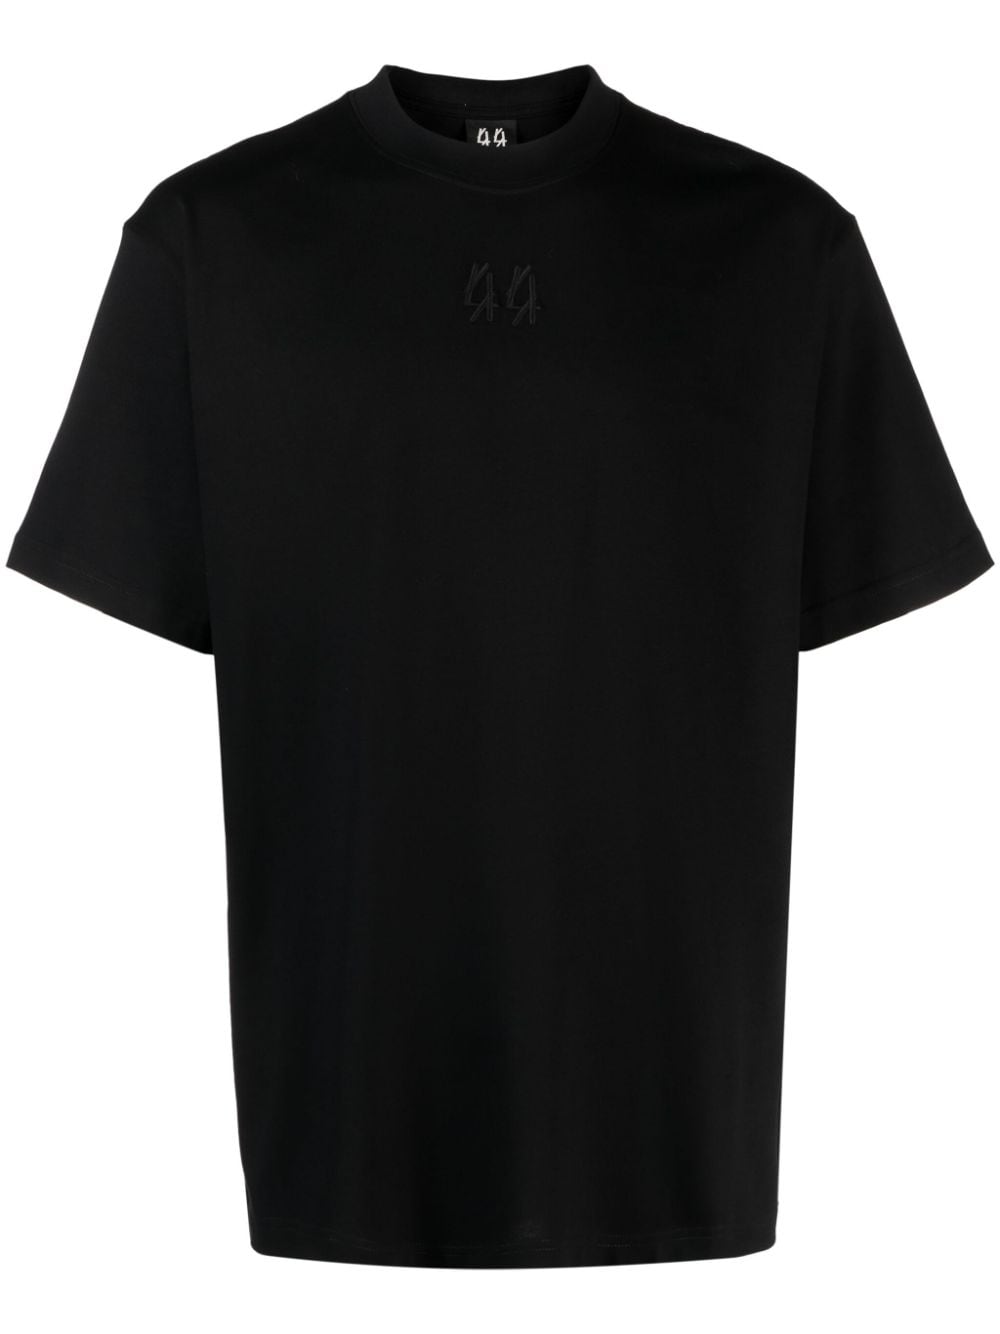 44 LABEL GROUP 44 Original logo-print cotton T-shirt - Black von 44 LABEL GROUP